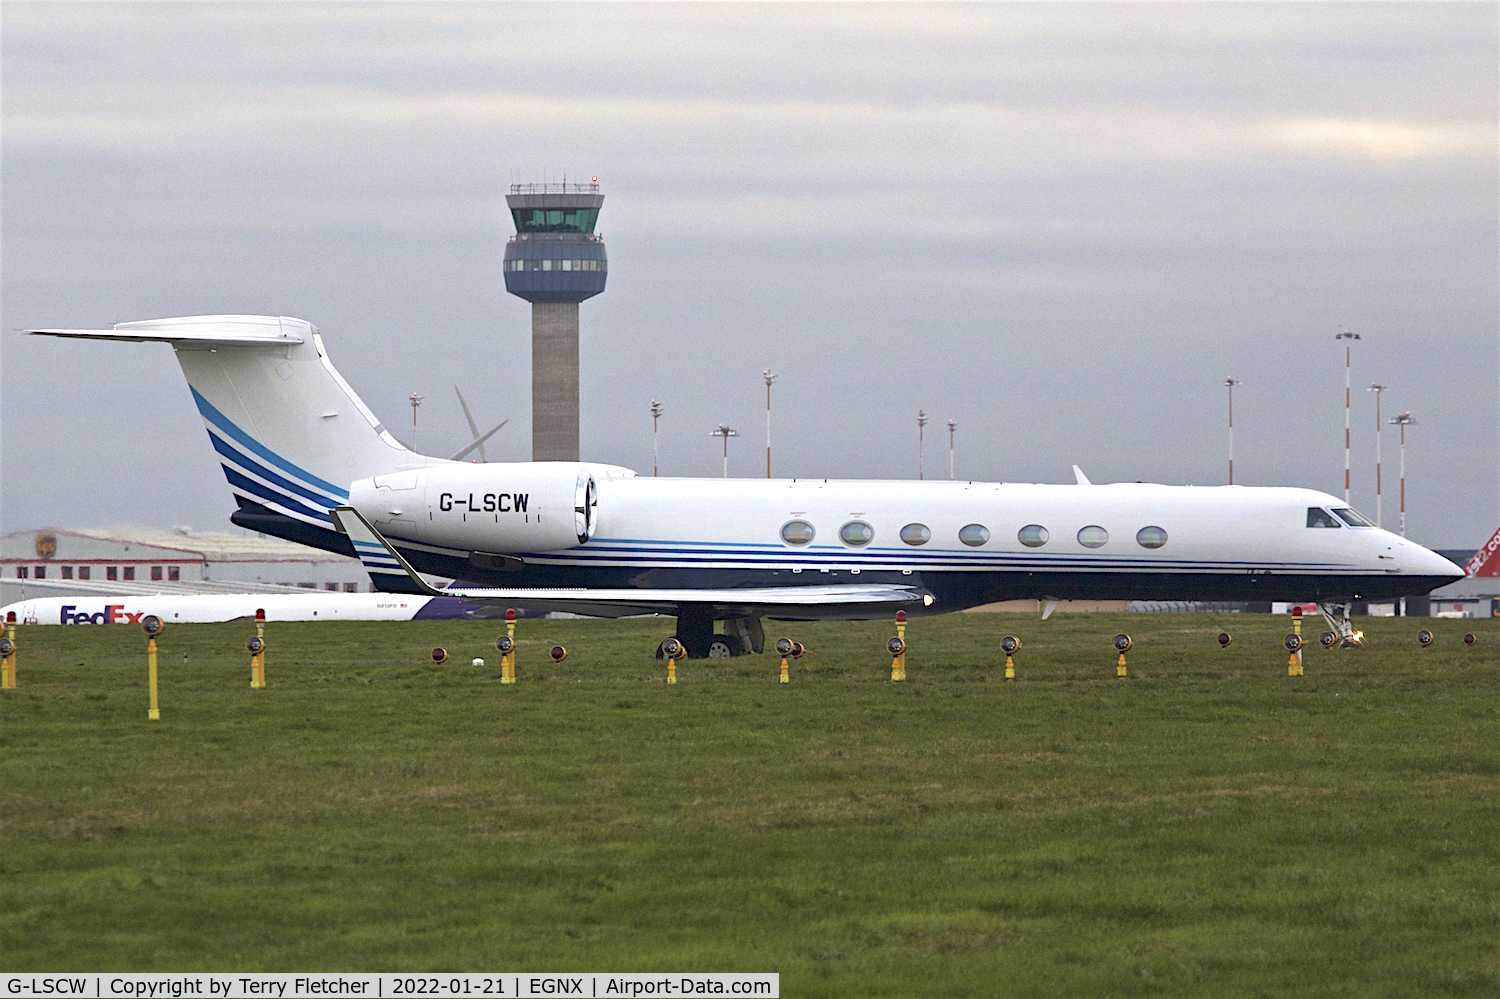 G-LSCW, 2014 Gulfstream Aerospace GV-SP (G550) C/N 5471, At East Midlands